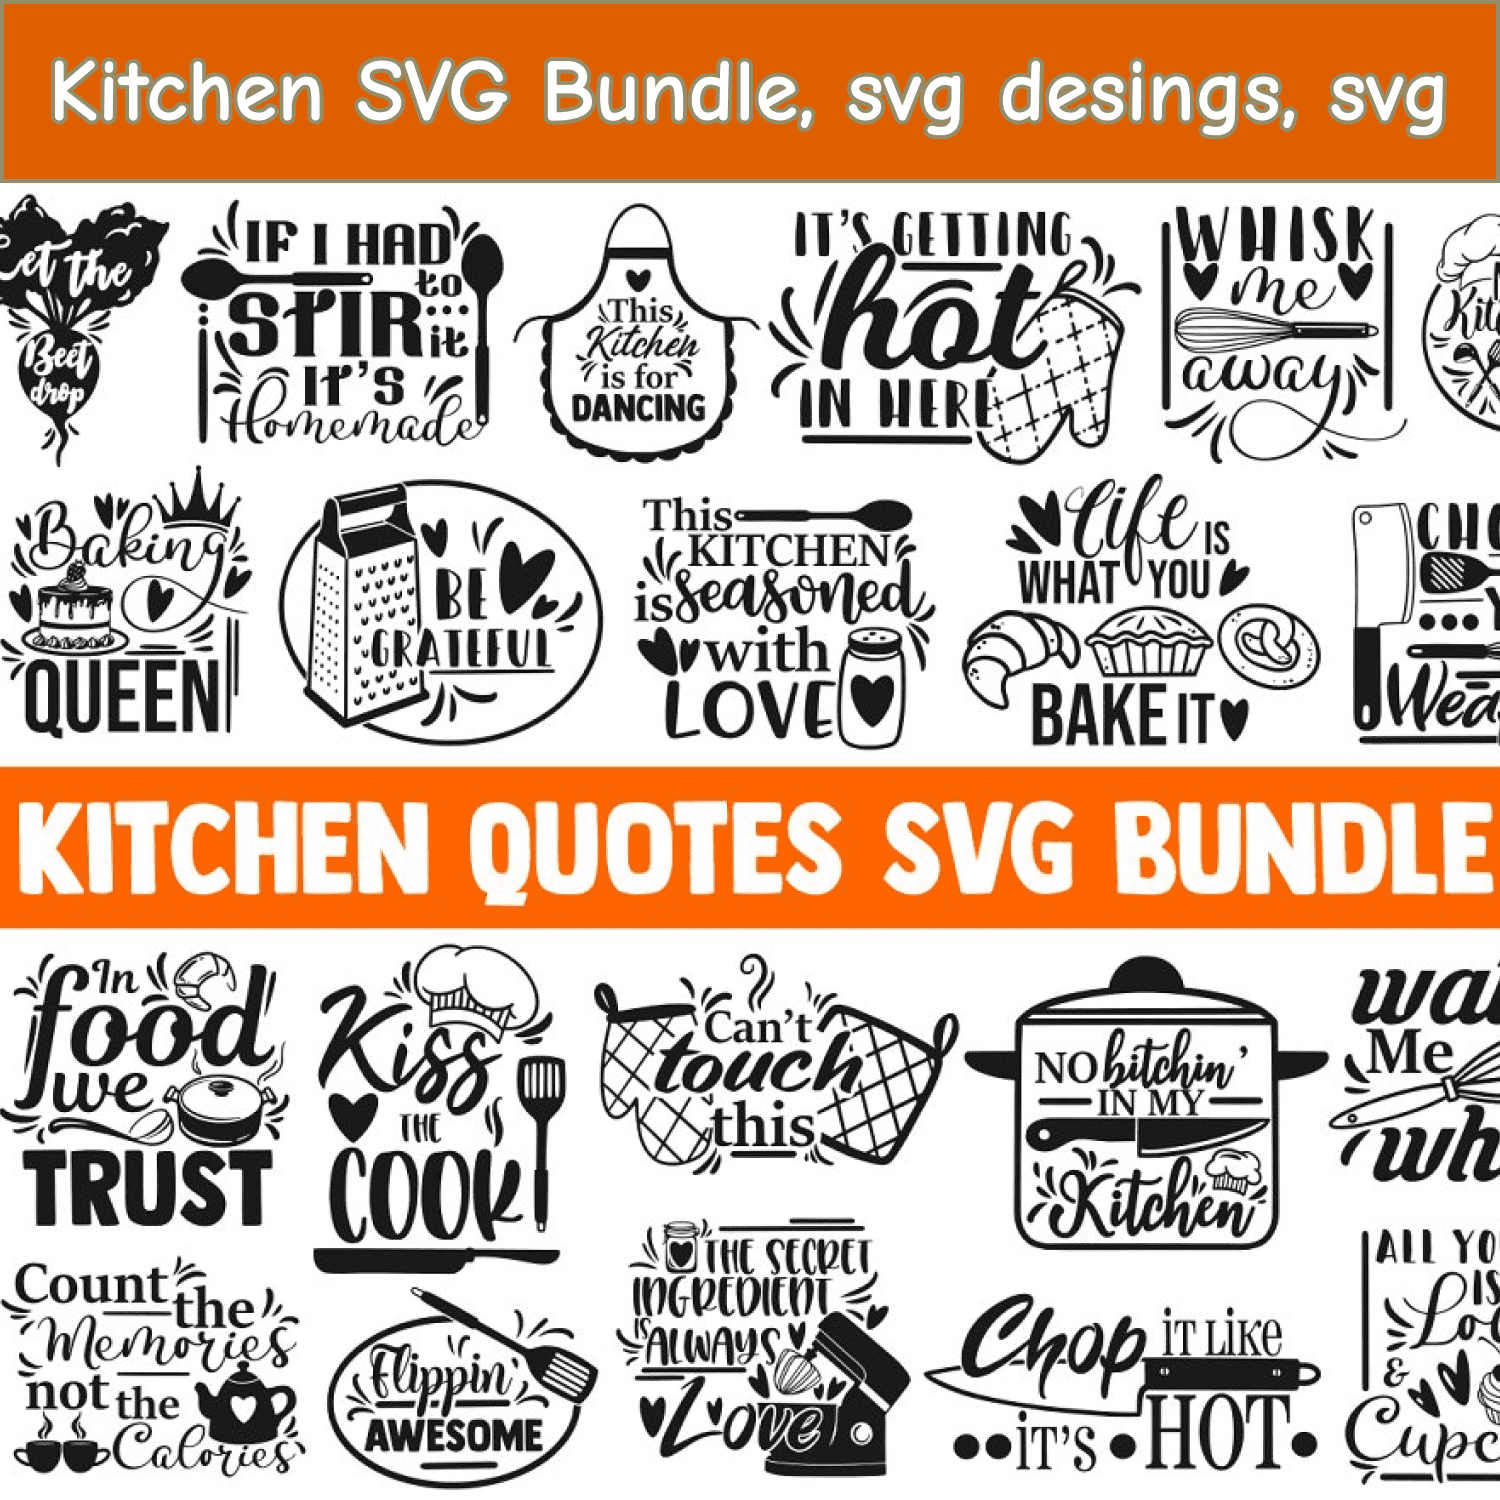 Kitchen SVG Bundle, svg desings, svg cover.